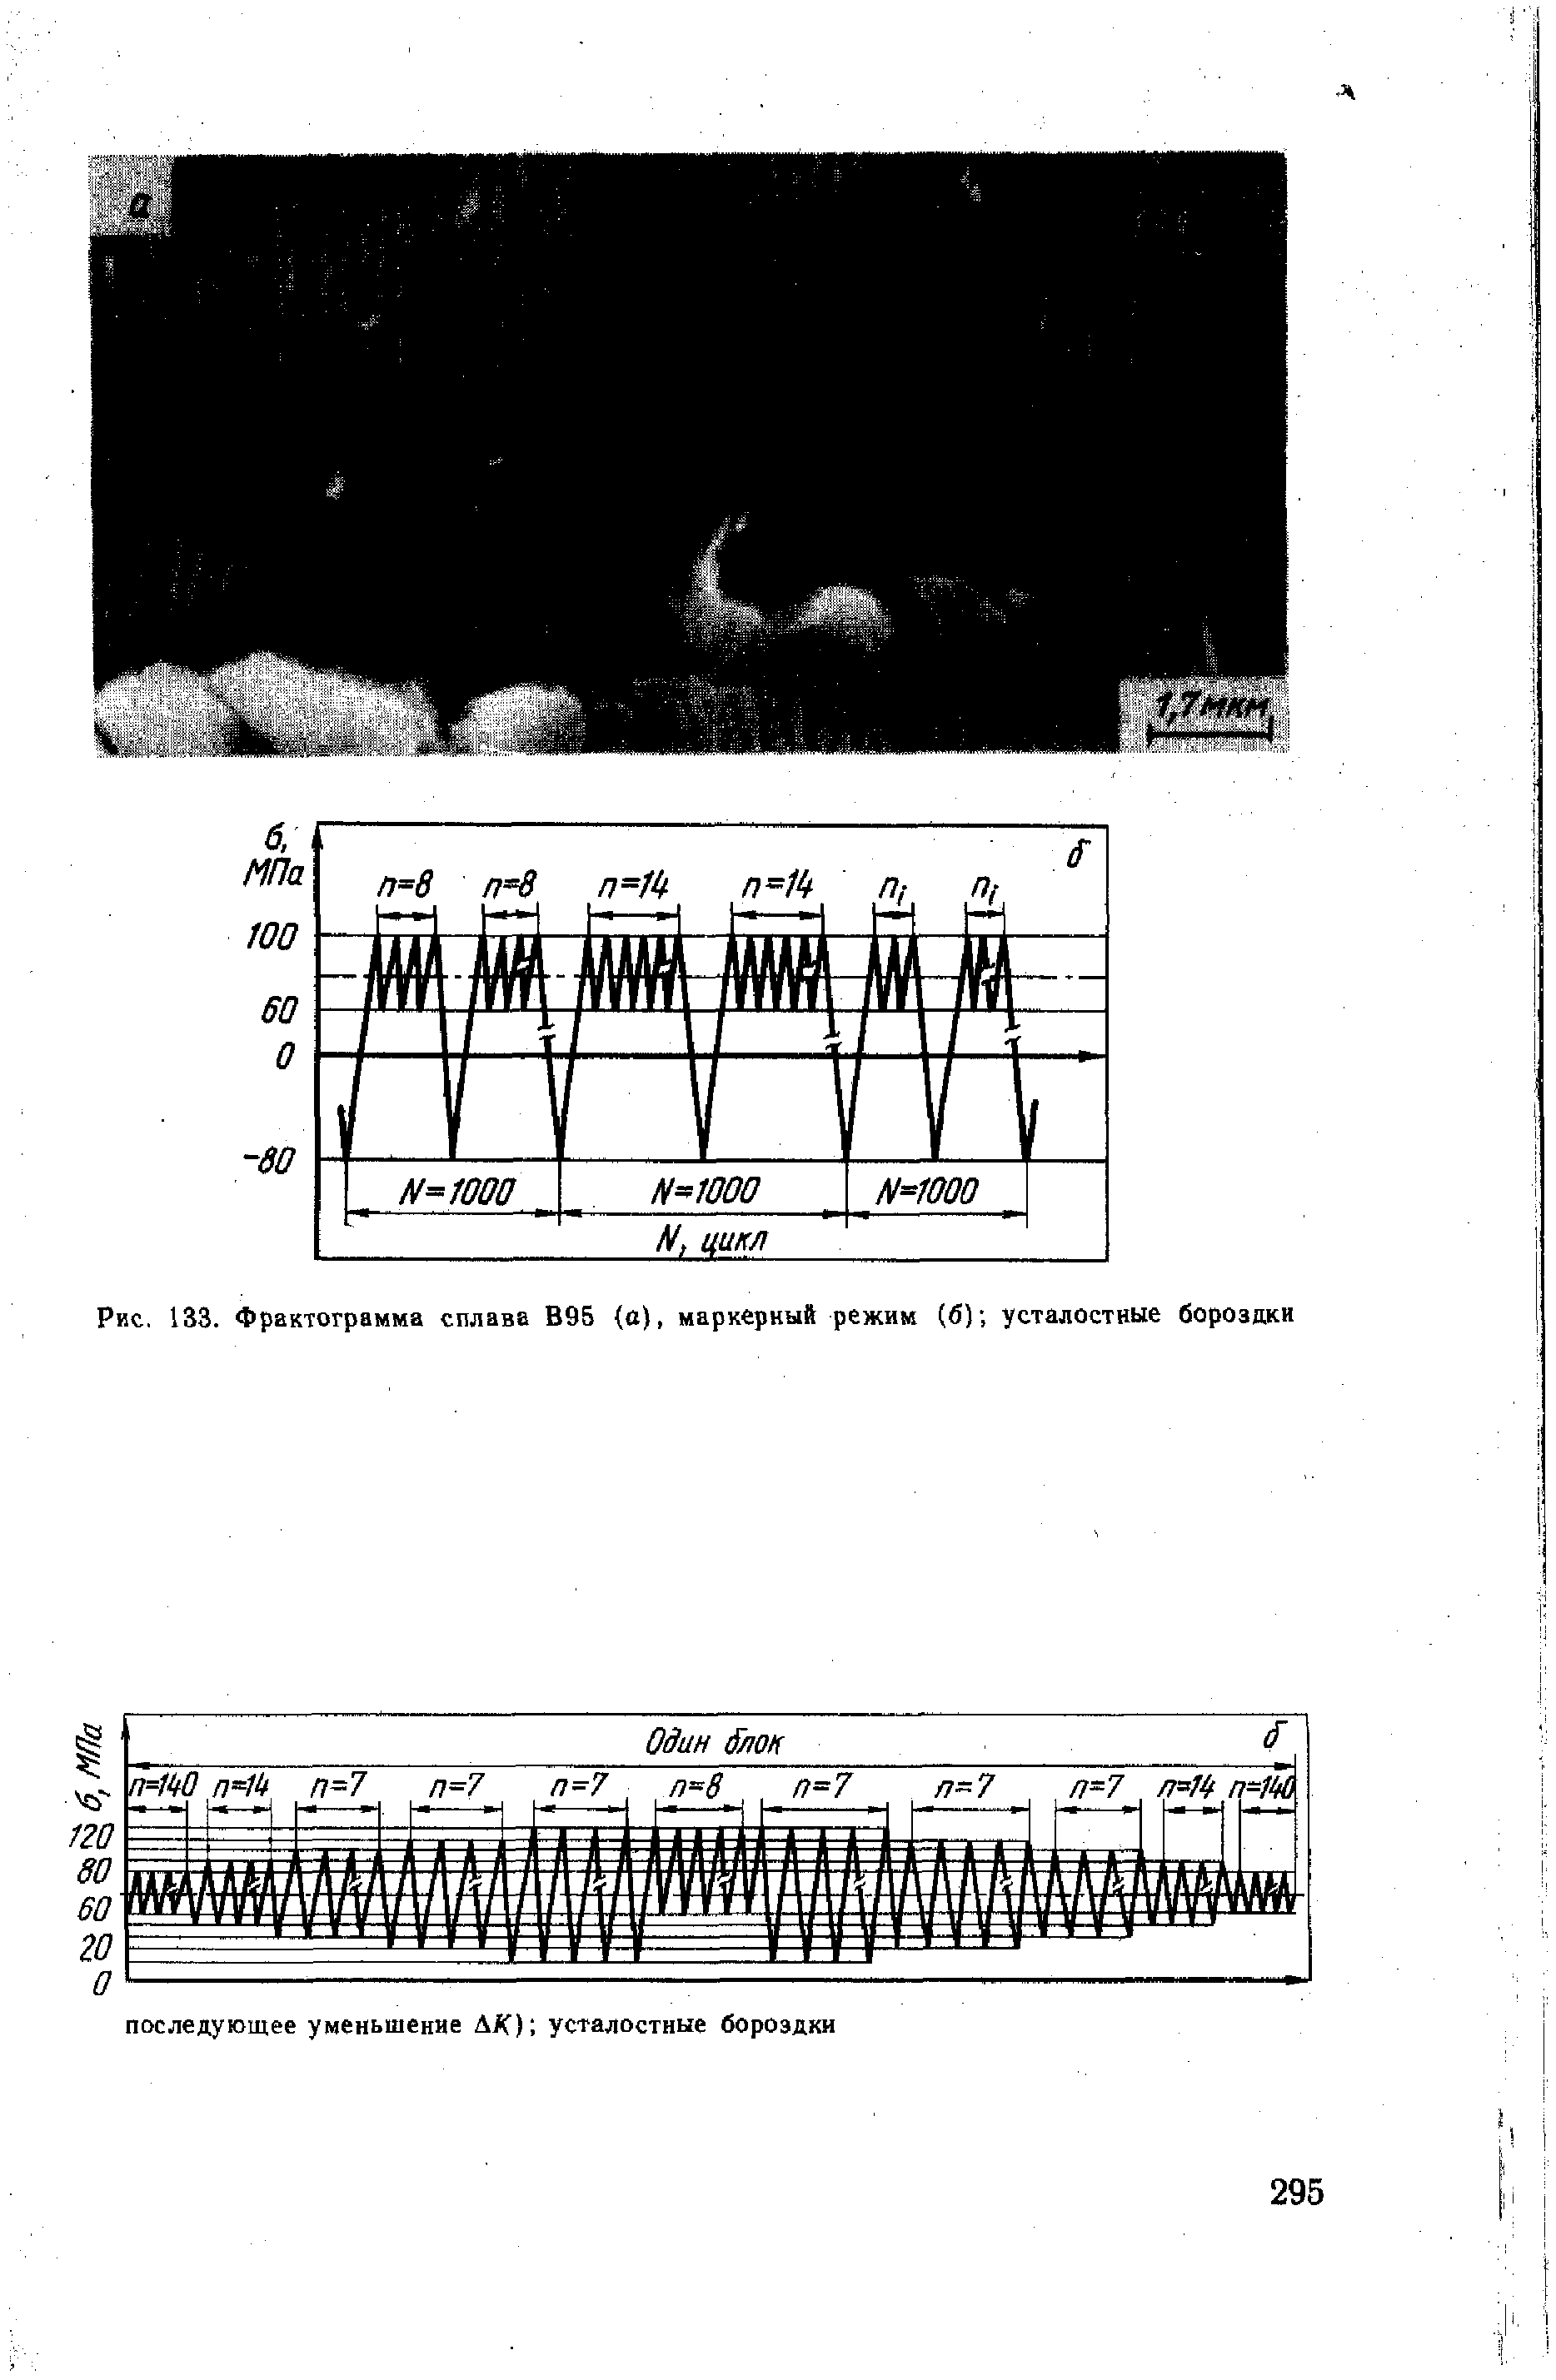 Рис. 133. Фрактограмма сплава В95 (о), маркерный режим (б) усталостные борозпки
